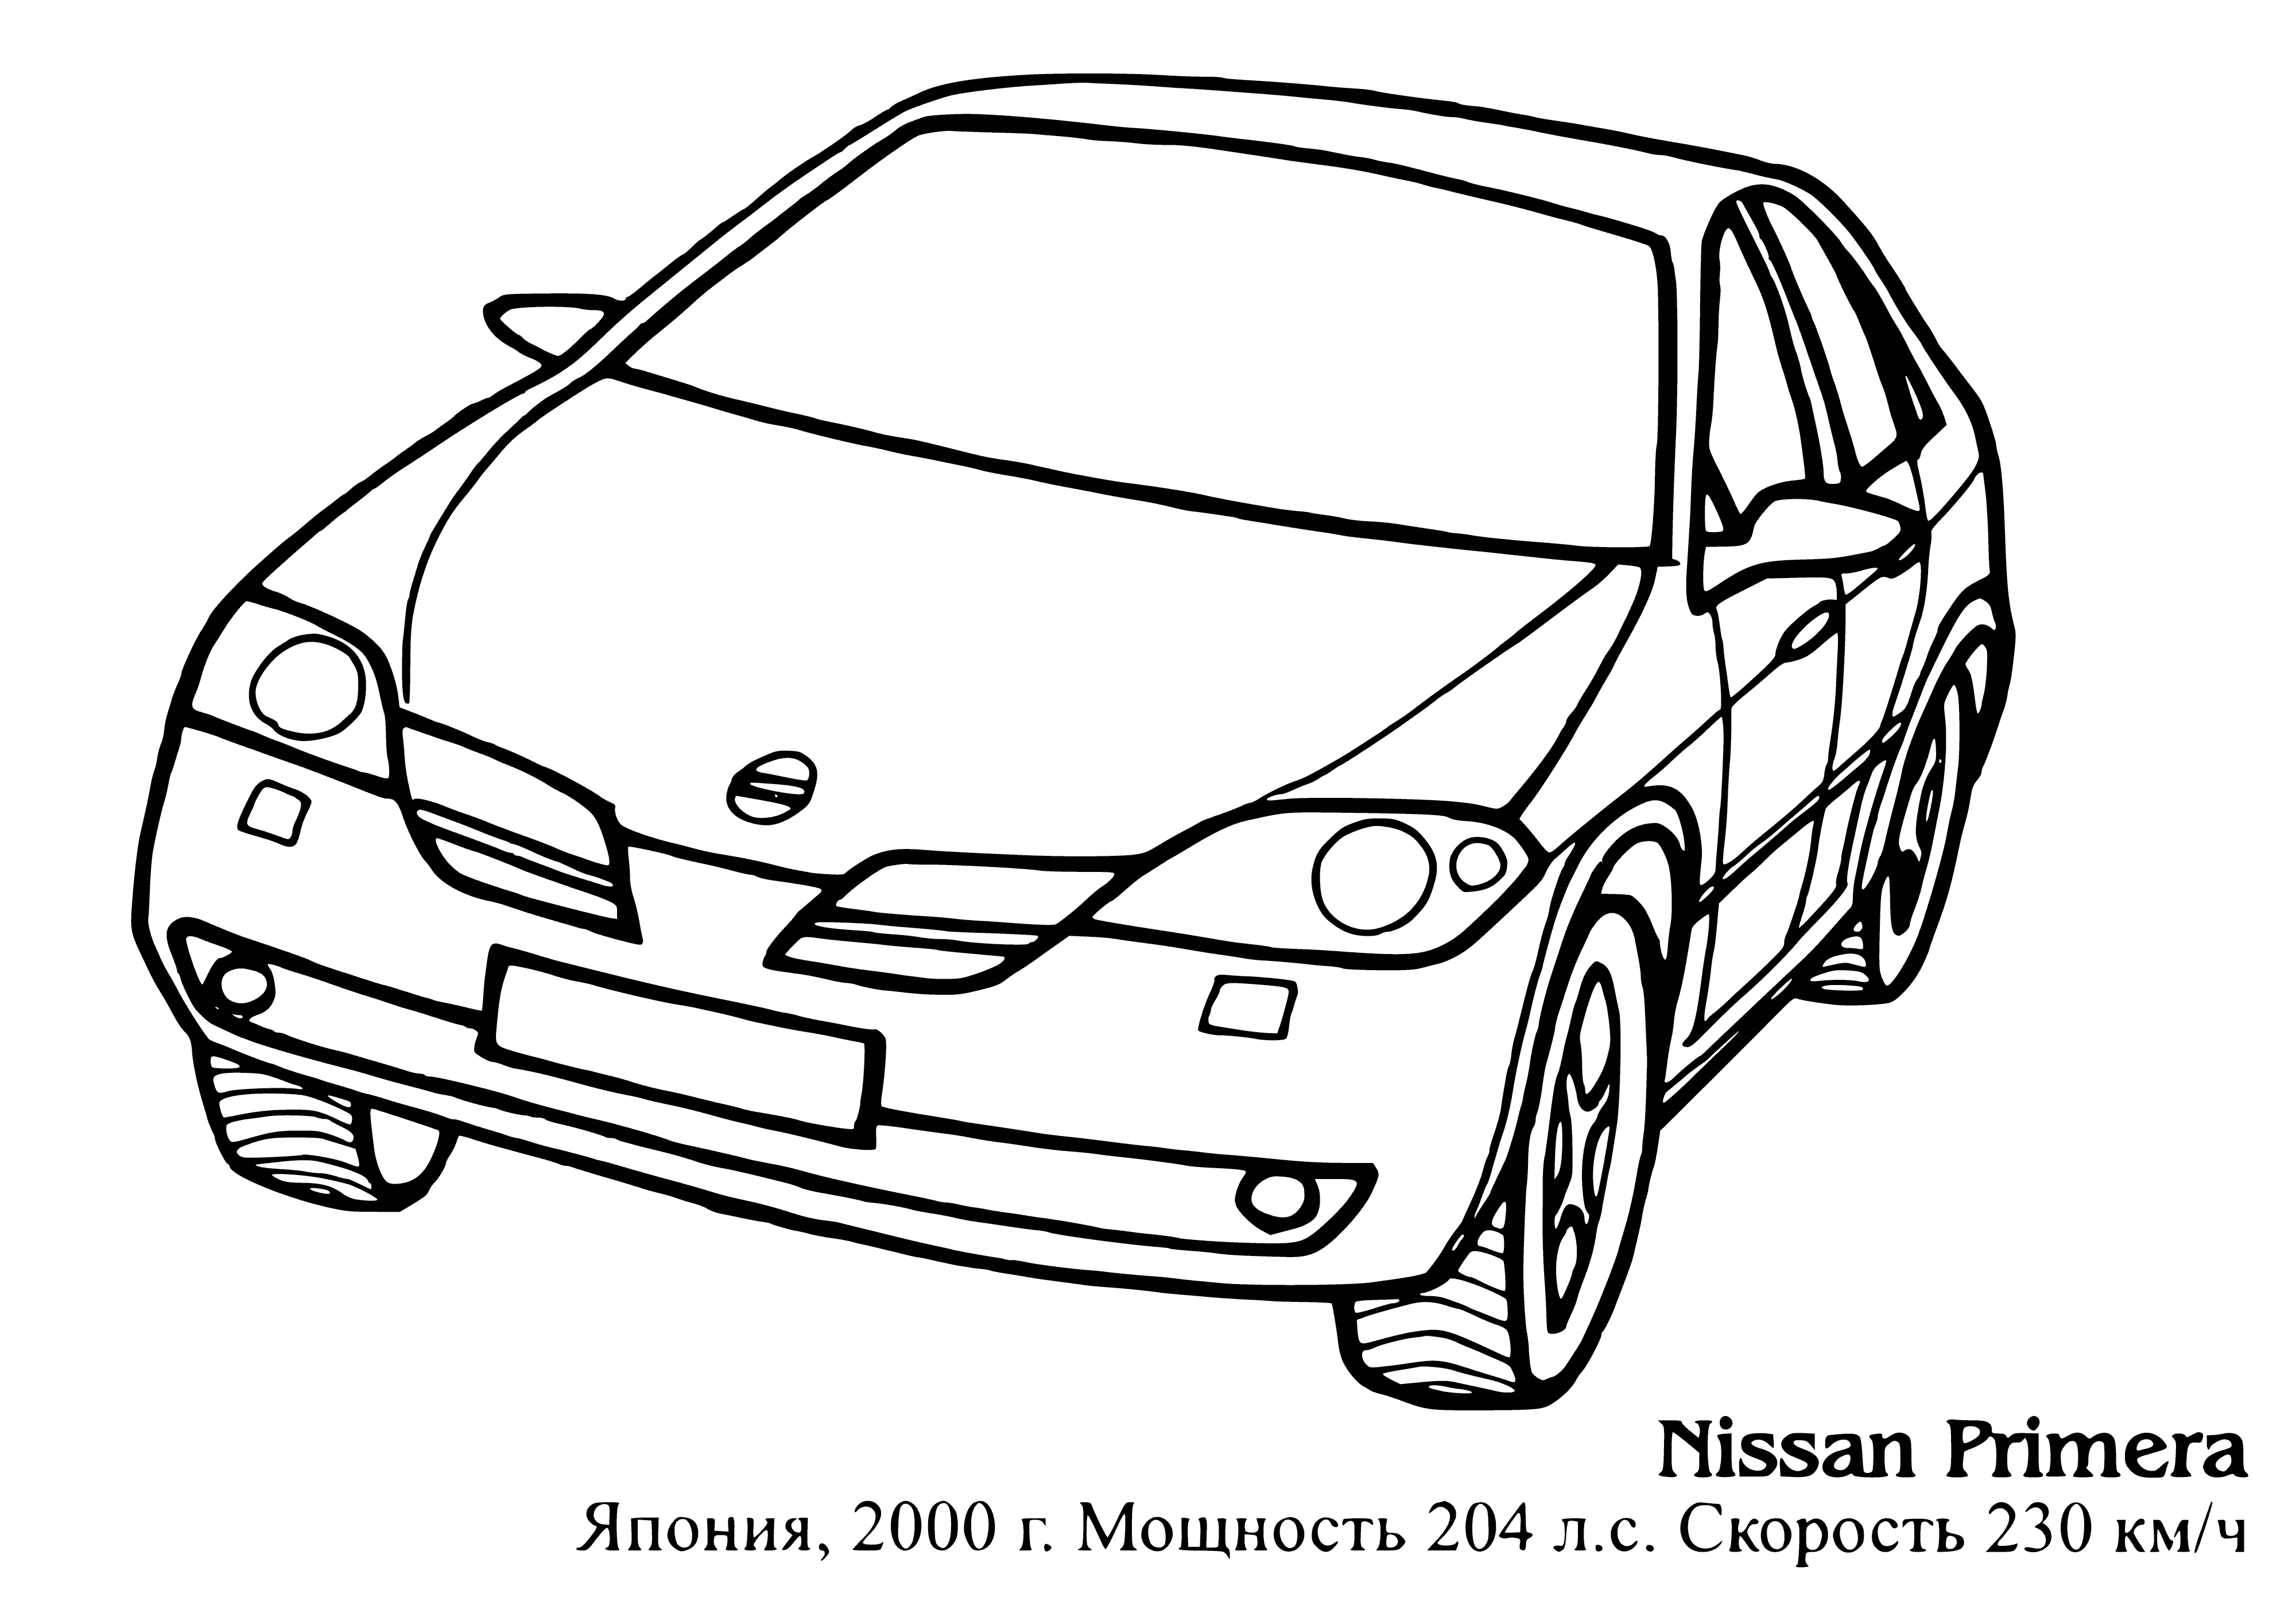 Nissan pierwszy kolorowanka